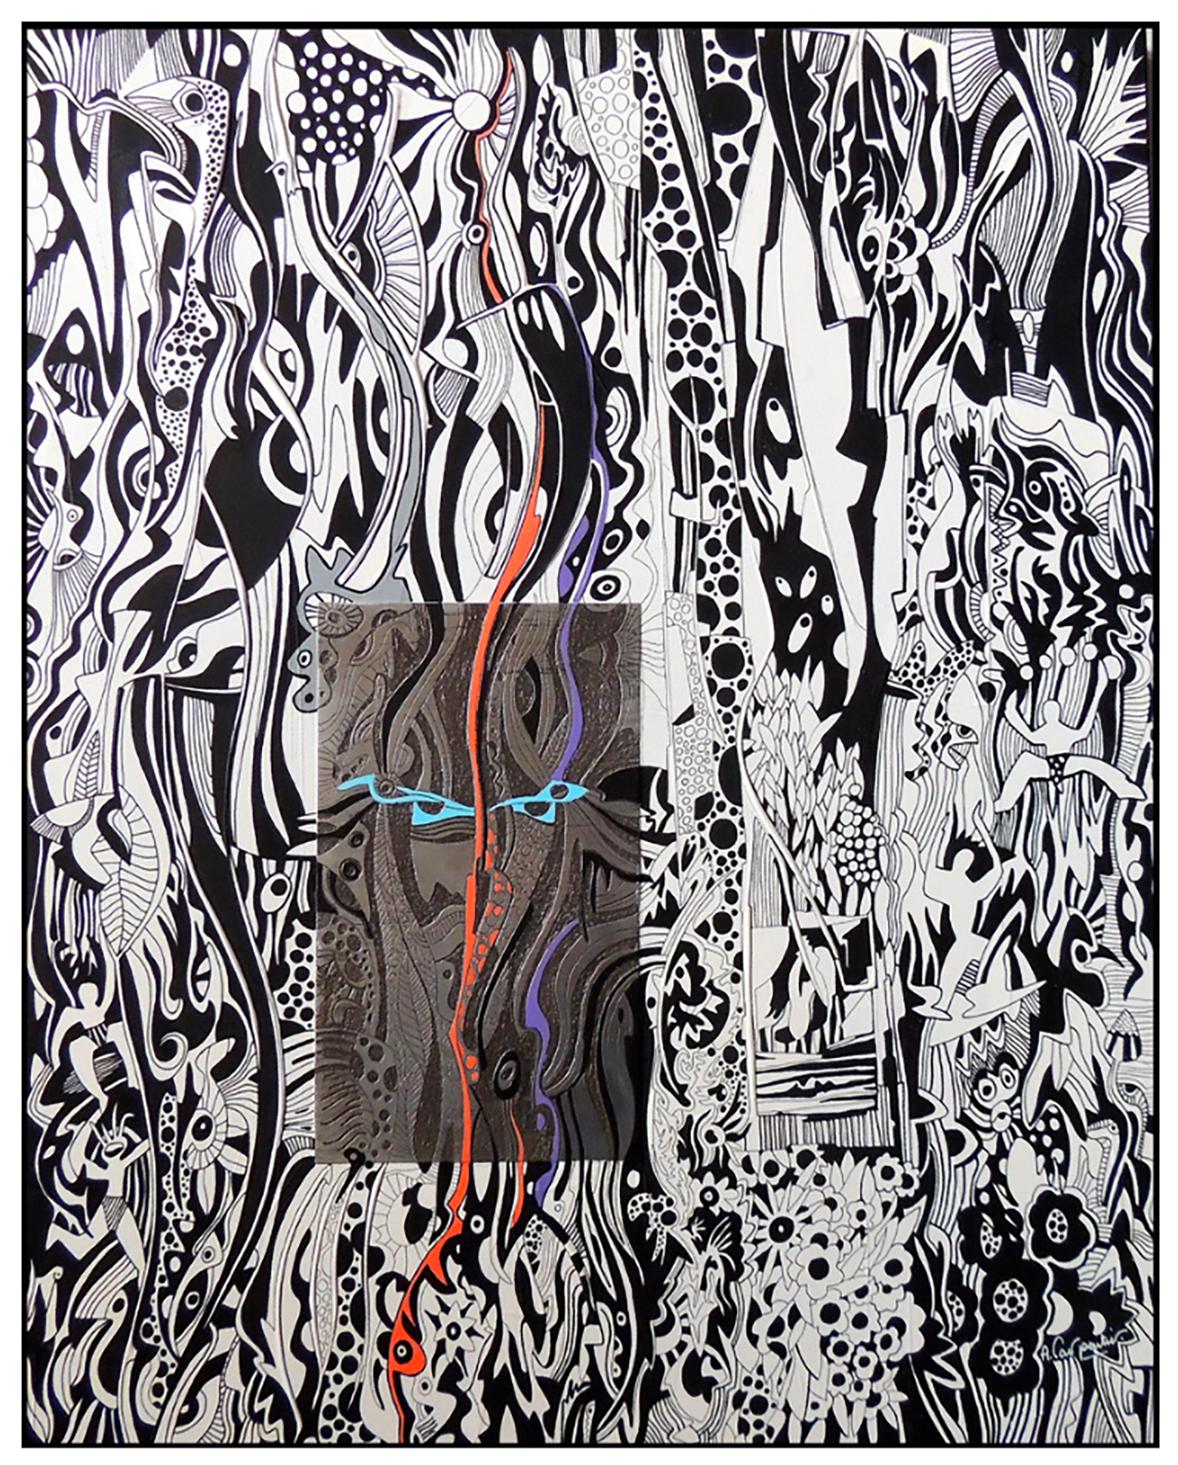 Le Masque - Alain Carpentier 
Format vertical - 15 figures (65cm x 54cm)
Crayon acrylique sur toile et gravure sur toile
700 euros 

Alain Carpentier est un artiste basé en Bretagne dont les peintures ont été exposées au niveau national et